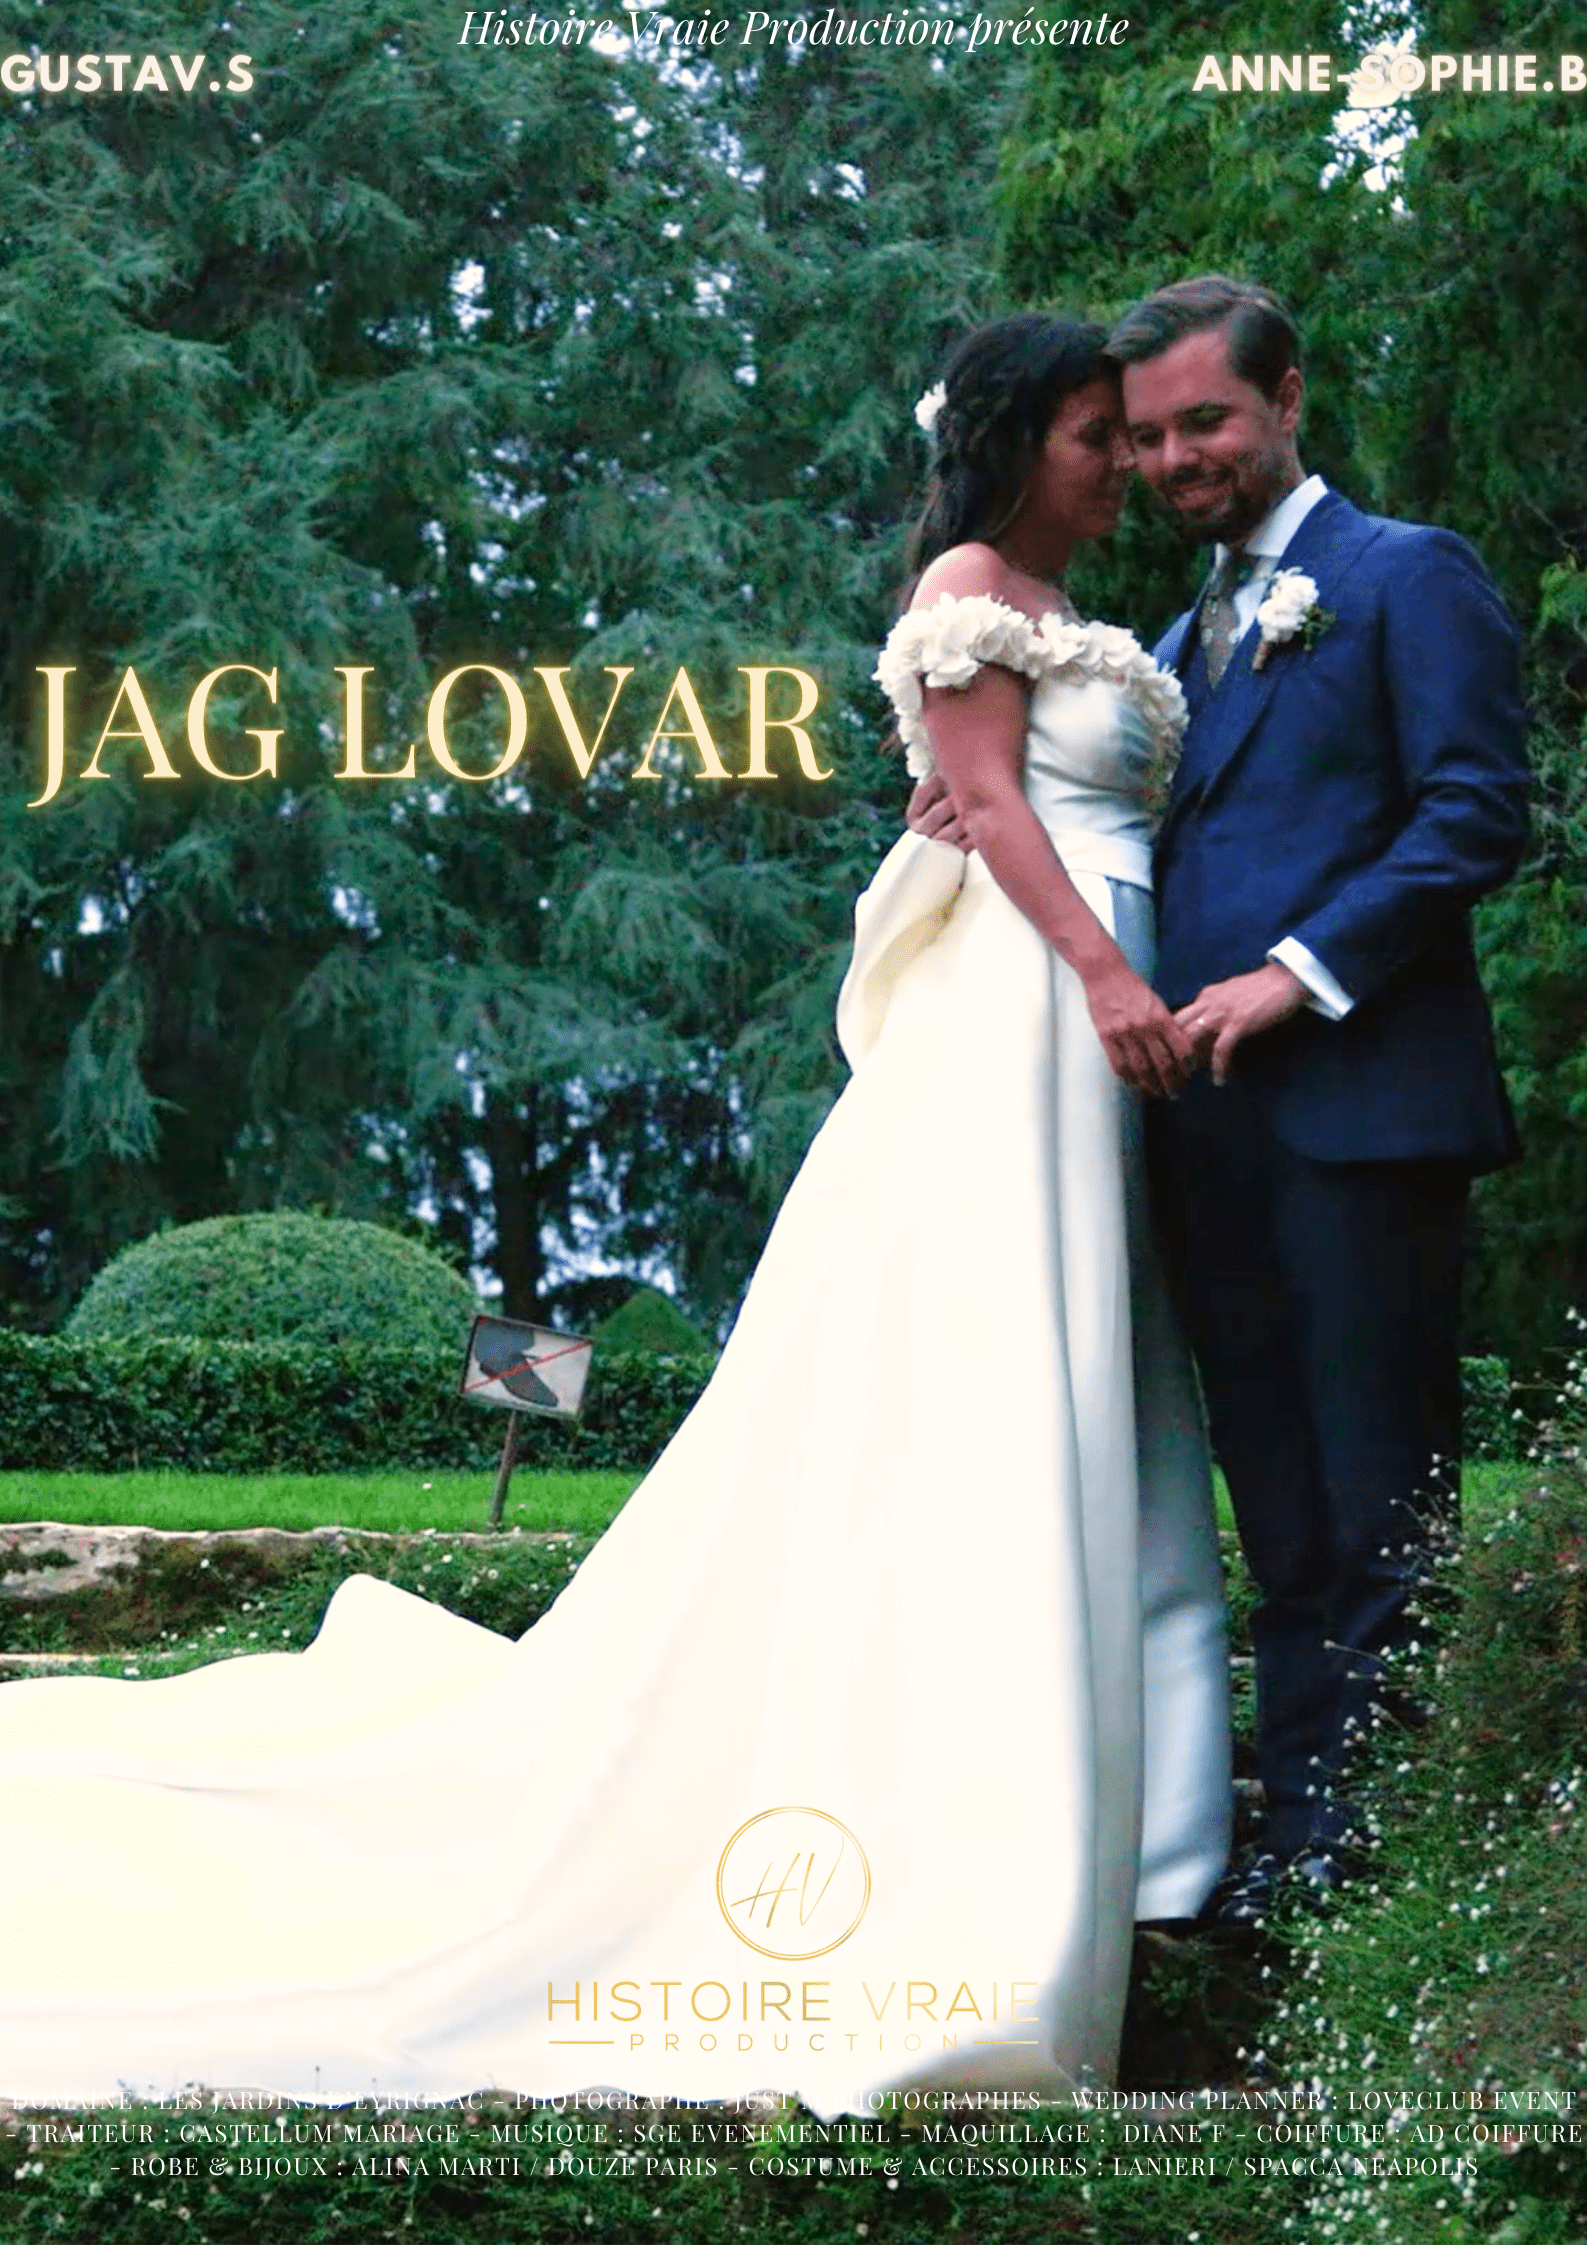 Affiche de la vidéo / du film de mariage d'un videaste de mariage : Jag Lovar